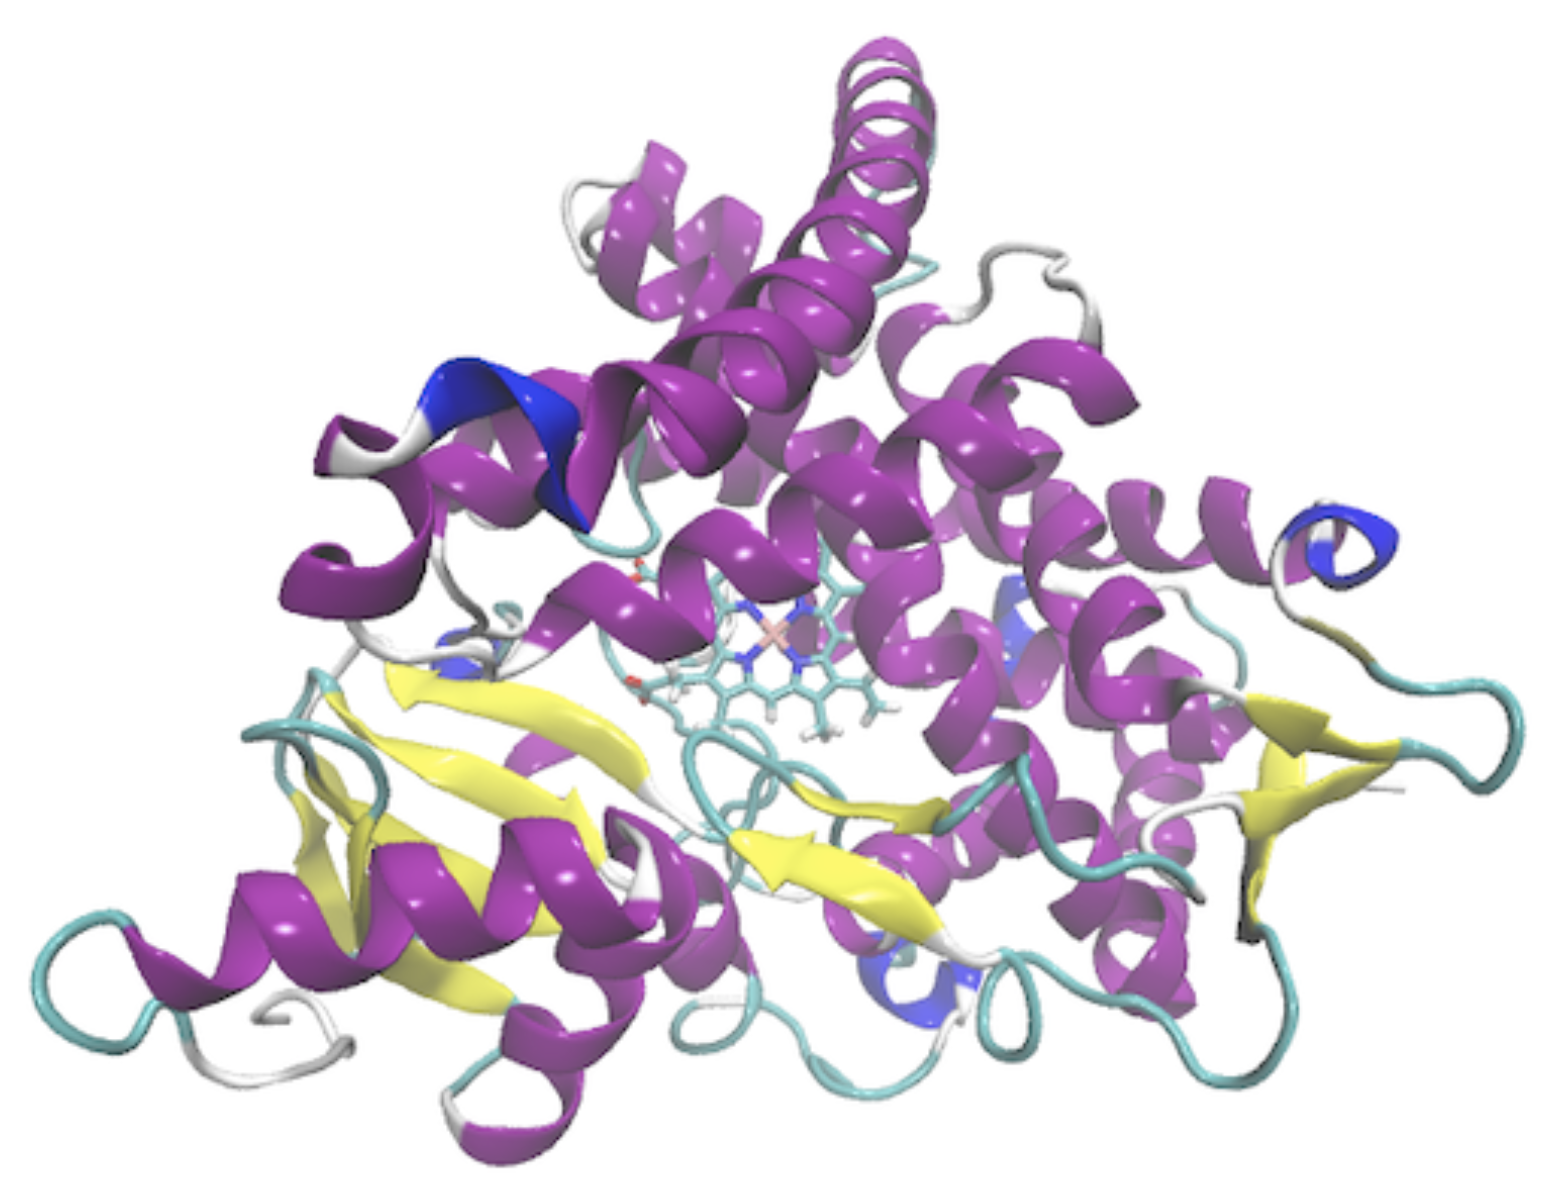 Aromatase structure